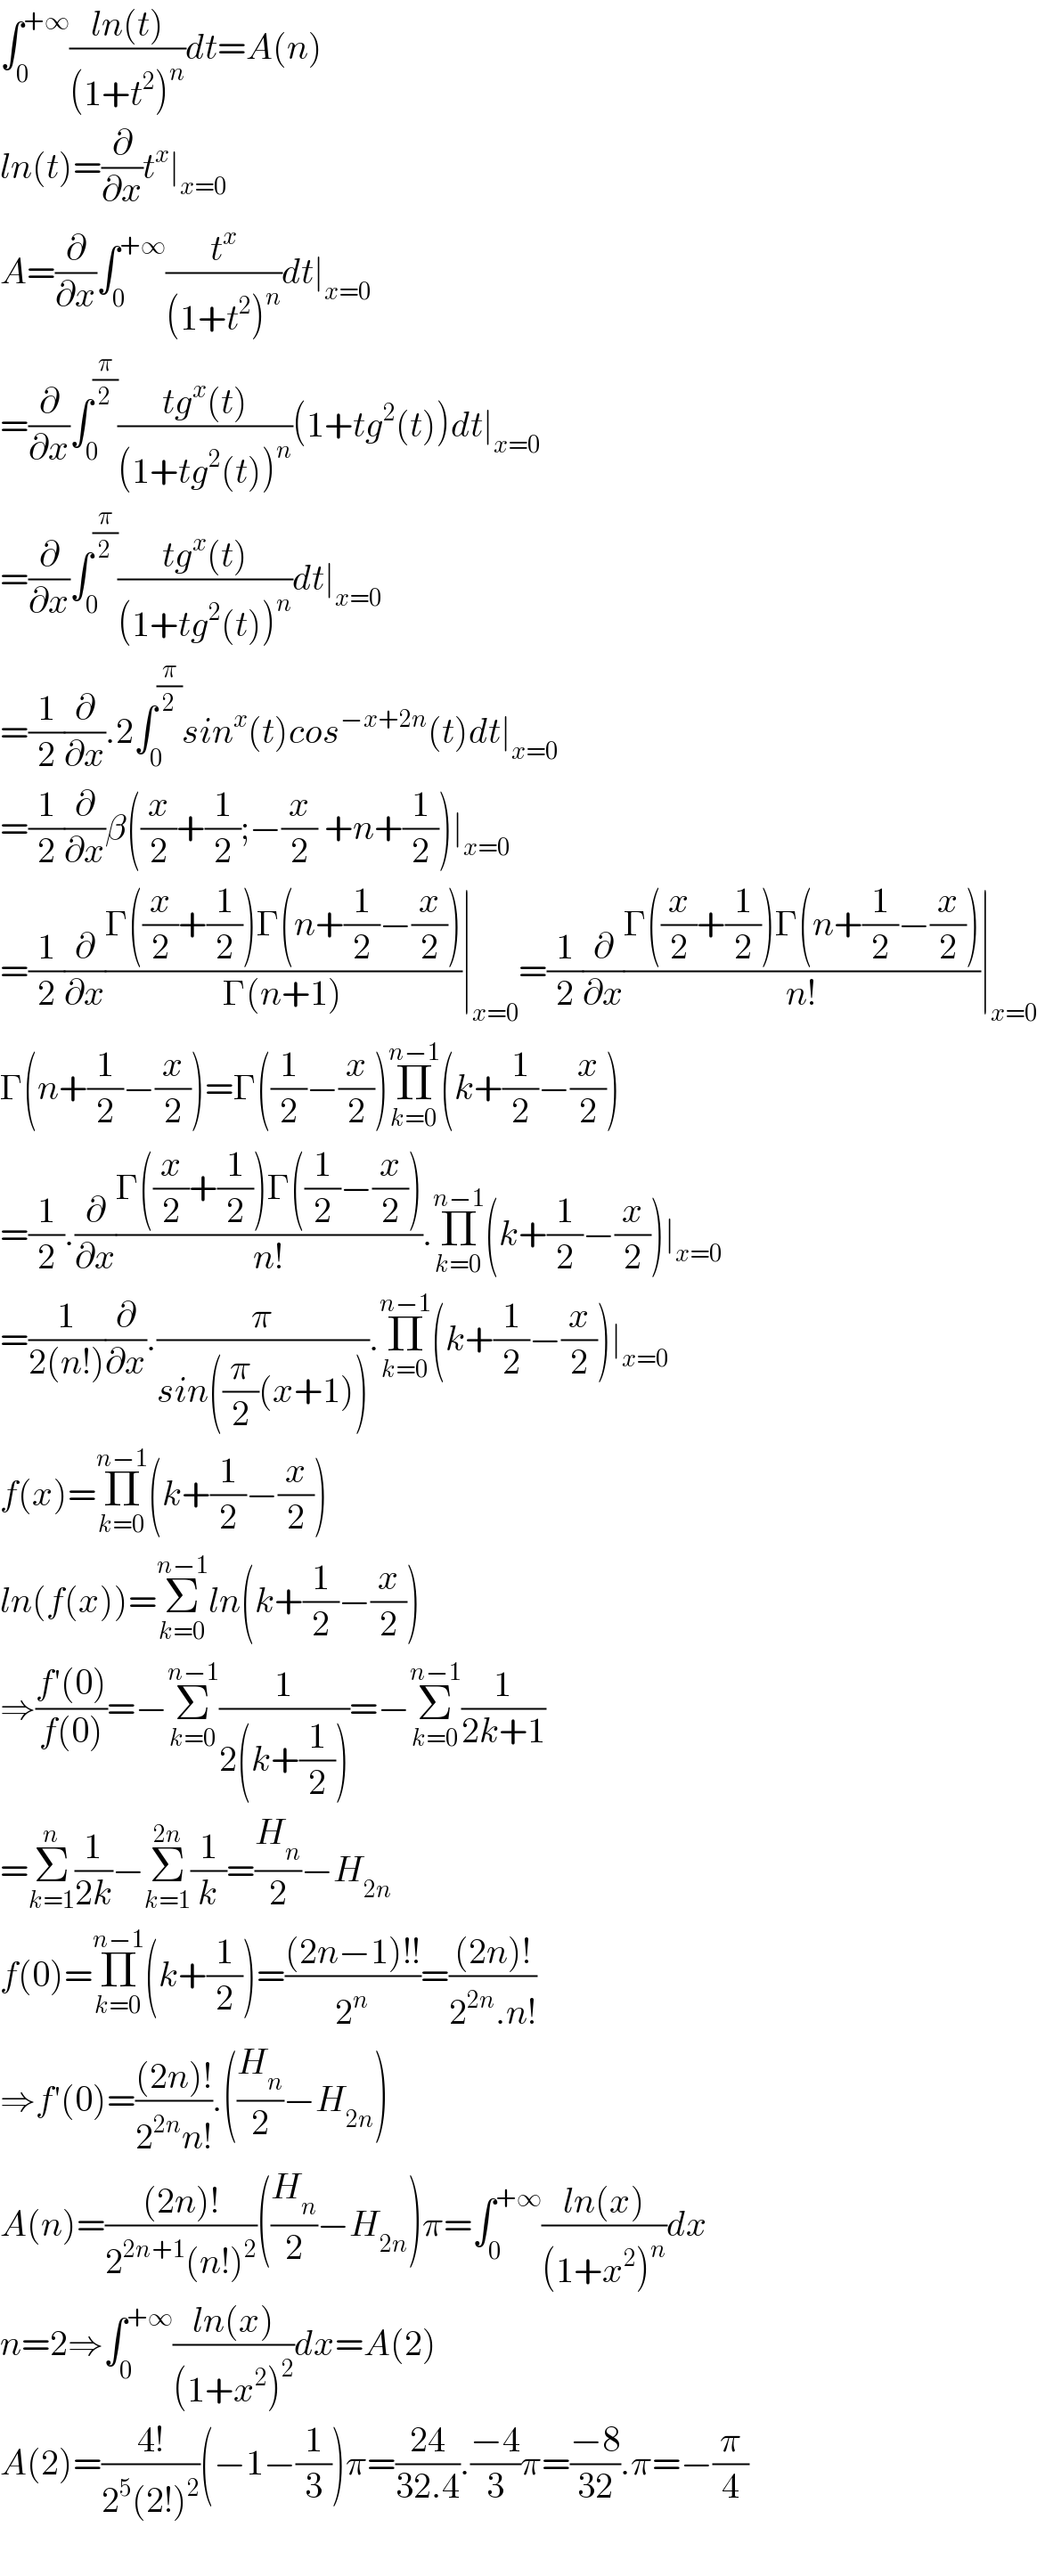 ∫_0 ^(+∞) ((ln(t))/((1+t^2 )^n ))dt=A(n)  ln(t)=(∂/∂x)t^x ∣_(x=0)   A=(∂/∂x)∫_0 ^(+∞) (t^x /((1+t^2 )^n ))dt∣_(x=0)   =(∂/∂x)∫_0 ^(π/2) ((tg^x (t))/((1+tg^2 (t))^n ))(1+tg^2 (t))dt∣_(x=0)   =(∂/∂x)∫_0 ^(π/2) ((tg^x (t))/((1+tg^2 (t))^n ))dt∣_(x=0)   =(1/2)(∂/∂x).2∫_0 ^(π/2) sin^x (t)cos^(−x+2n) (t)dt∣_(x=0)   =(1/2)(∂/∂x)β((x/2)+(1/2);−(x/2) +n+(1/2))∣_(x=0)   =(1/2)(∂/∂x)((Γ((x/2)+(1/2))Γ(n+(1/2)−(x/2)))/(Γ(n+1)))∣_(x=0) =(1/2)(∂/∂x)((Γ((x/2)+(1/2))Γ(n+(1/2)−(x/2)))/(n!))∣_(x=0)   Γ(n+(1/2)−(x/2))=Γ((1/2)−(x/2))Π_(k=0) ^(n−1) (k+(1/2)−(x/2))  =(1/2).(∂/∂x)((Γ((x/2)+(1/2))Γ((1/2)−(x/2)))/(n!)).Π_(k=0) ^(n−1) (k+(1/2)−(x/2))∣_(x=0)   =(1/(2(n!)))(∂/∂x).(π/(sin((π/2)(x+1)))).Π_(k=0) ^(n−1) (k+(1/2)−(x/2))∣_(x=0)   f(x)=Π_(k=0) ^(n−1) (k+(1/2)−(x/2))  ln(f(x))=Σ_(k=0) ^(n−1) ln(k+(1/2)−(x/2))  ⇒((f′(0))/(f(0)))=−Σ_(k=0) ^(n−1) (1/(2(k+(1/2))))=−Σ_(k=0) ^(n−1) (1/(2k+1))  =Σ_(k=1) ^n (1/(2k))−Σ_(k=1) ^(2n) (1/k)=(H_n /2)−H_(2n)   f(0)=Π_(k=0) ^(n−1) (k+(1/2))=(((2n−1)!!)/2^n )=(((2n)!)/(2^(2n) .n!))  ⇒f′(0)=(((2n)!)/(2^(2n) n!)).((H_n /2)−H_(2n) )  A(n)=(((2n)!)/(2^(2n+1) (n!)^2 ))((H_n /2)−H_(2n) )π=∫_0 ^(+∞) ((ln(x))/((1+x^2 )^n ))dx  n=2⇒∫_0 ^(+∞) ((ln(x))/((1+x^2 )^2 ))dx=A(2)  A(2)=((4!)/(2^5 (2!)^2 ))(−1−(1/3))π=((24)/(32.4)).((−4)/3)π=((−8)/(32)).π=−(π/4)    